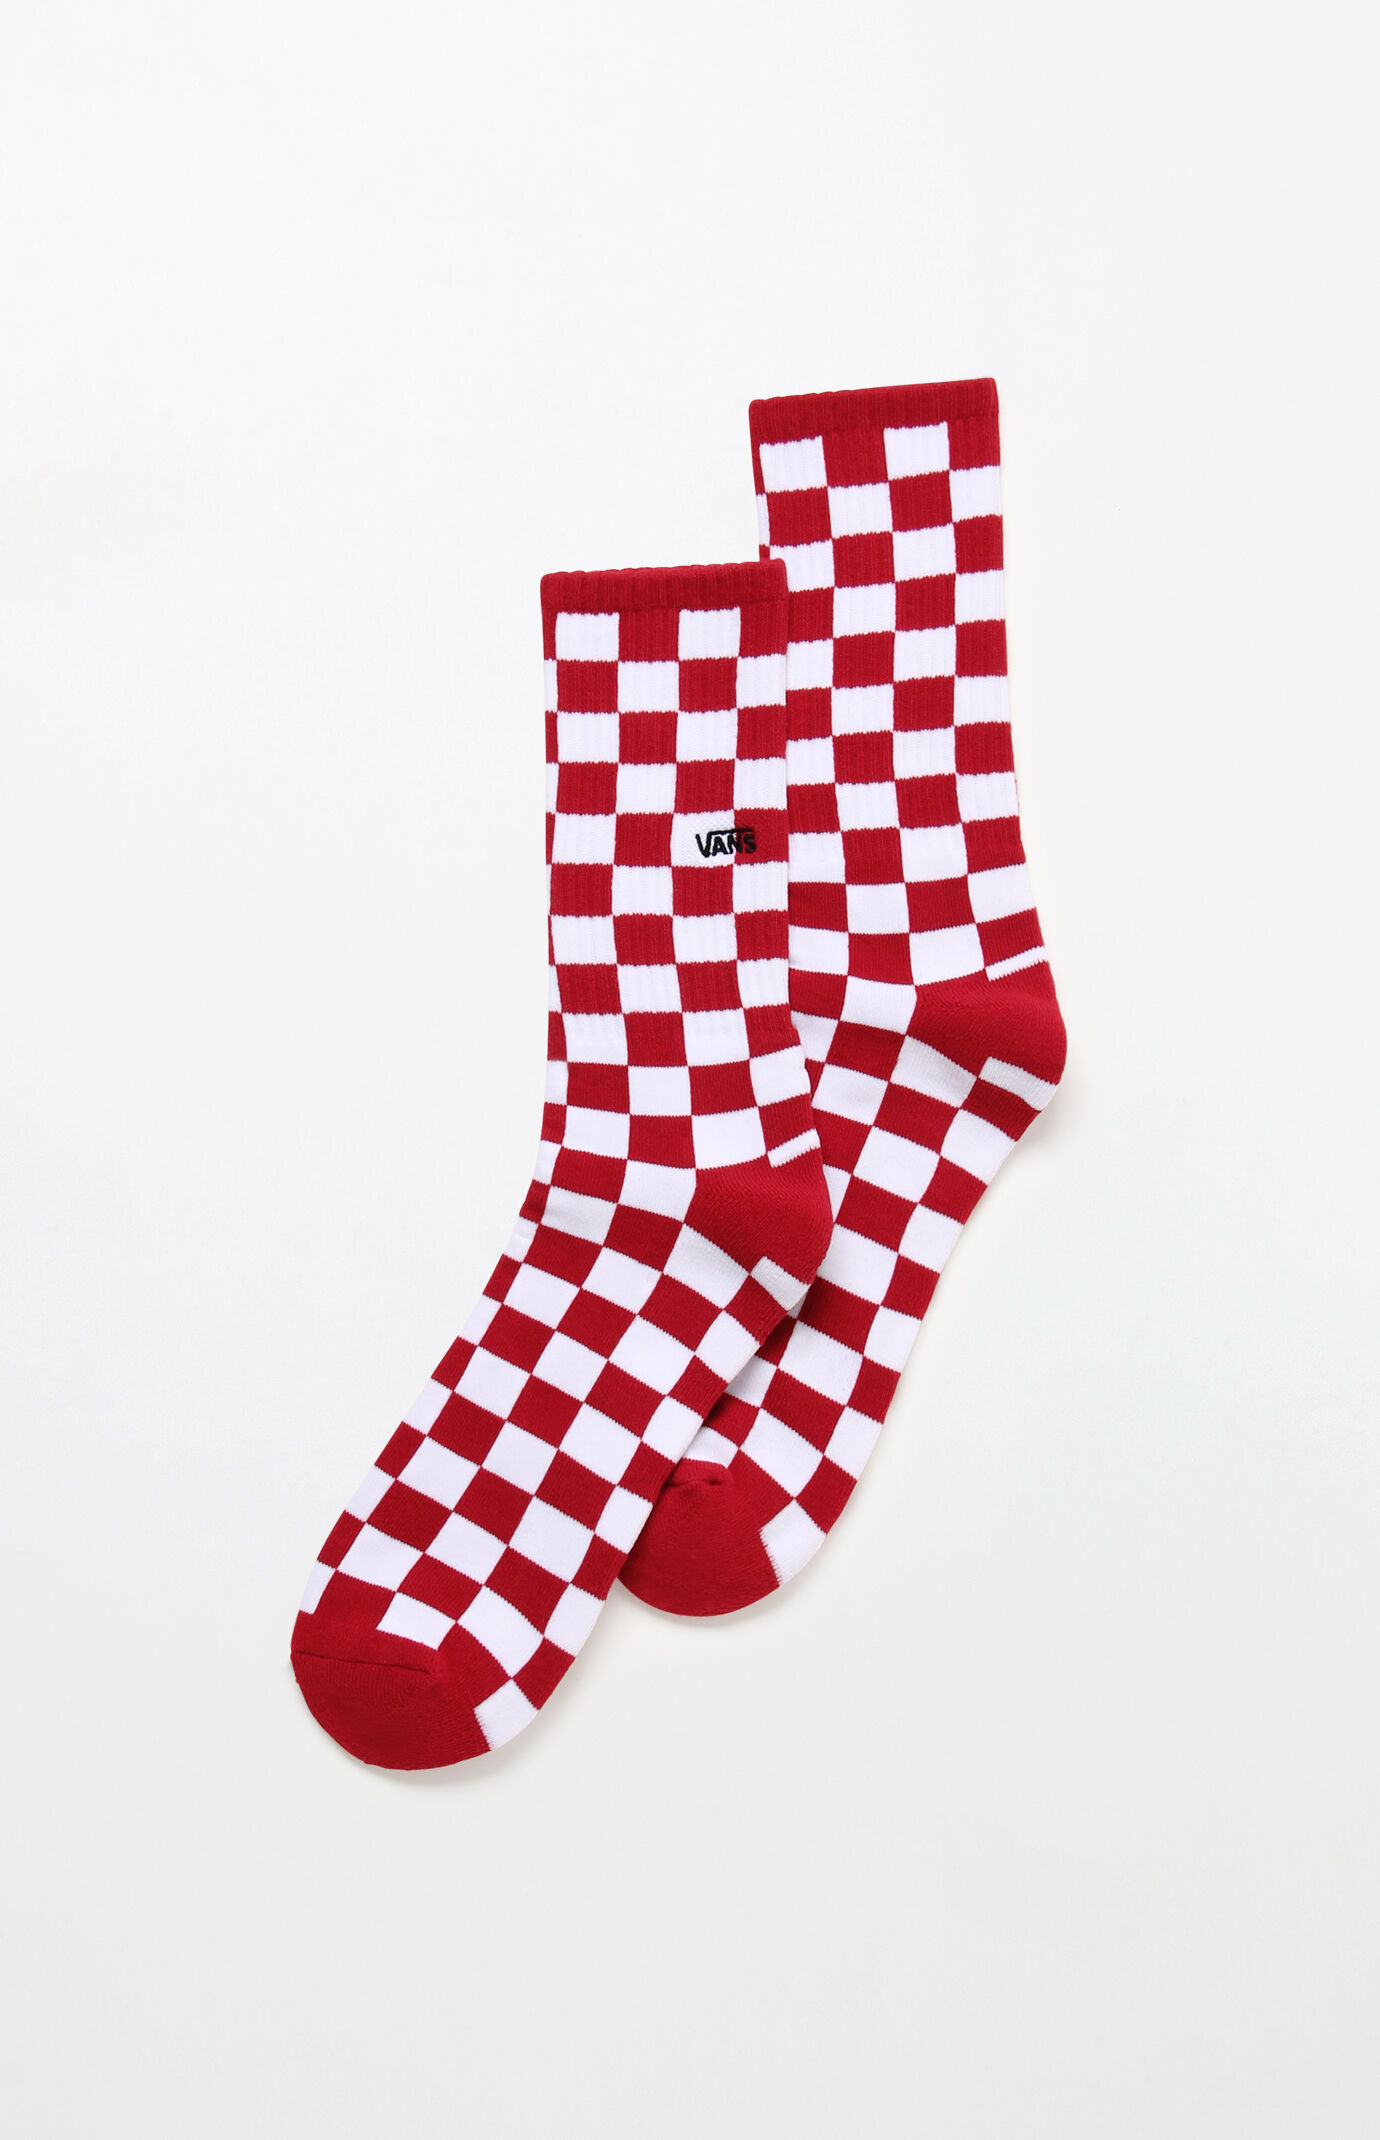 vans red checkered socks